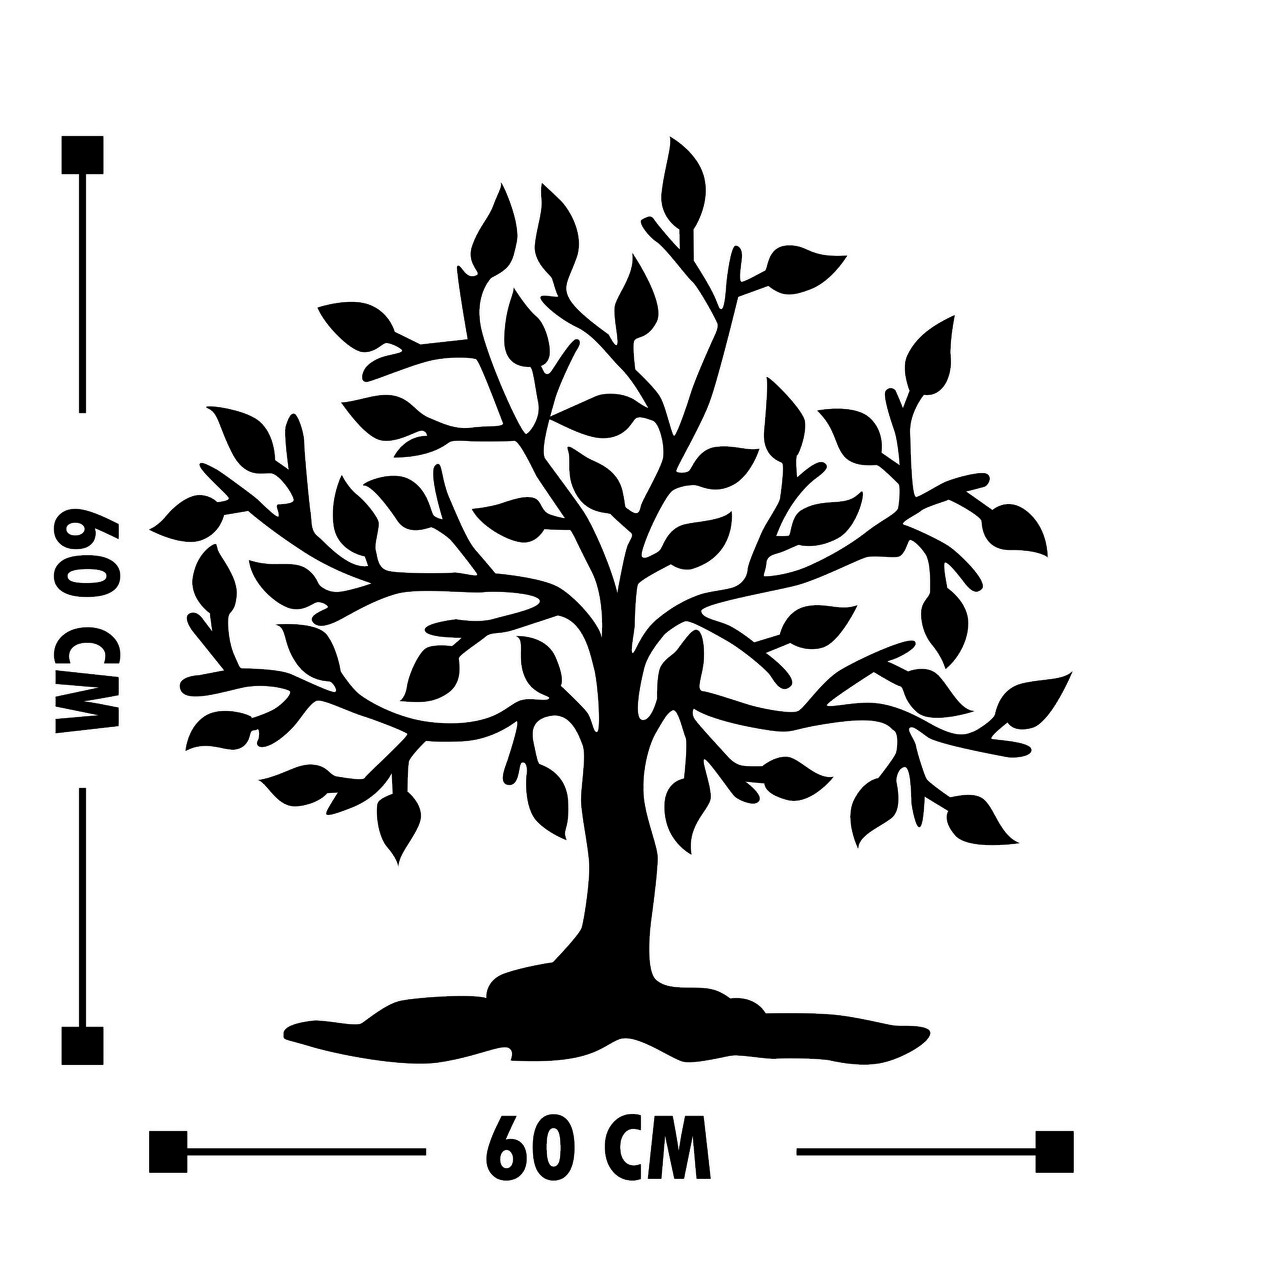 Tree 14 Fali Dekoráció, Tanelorn, 60x60 Cm, Fém